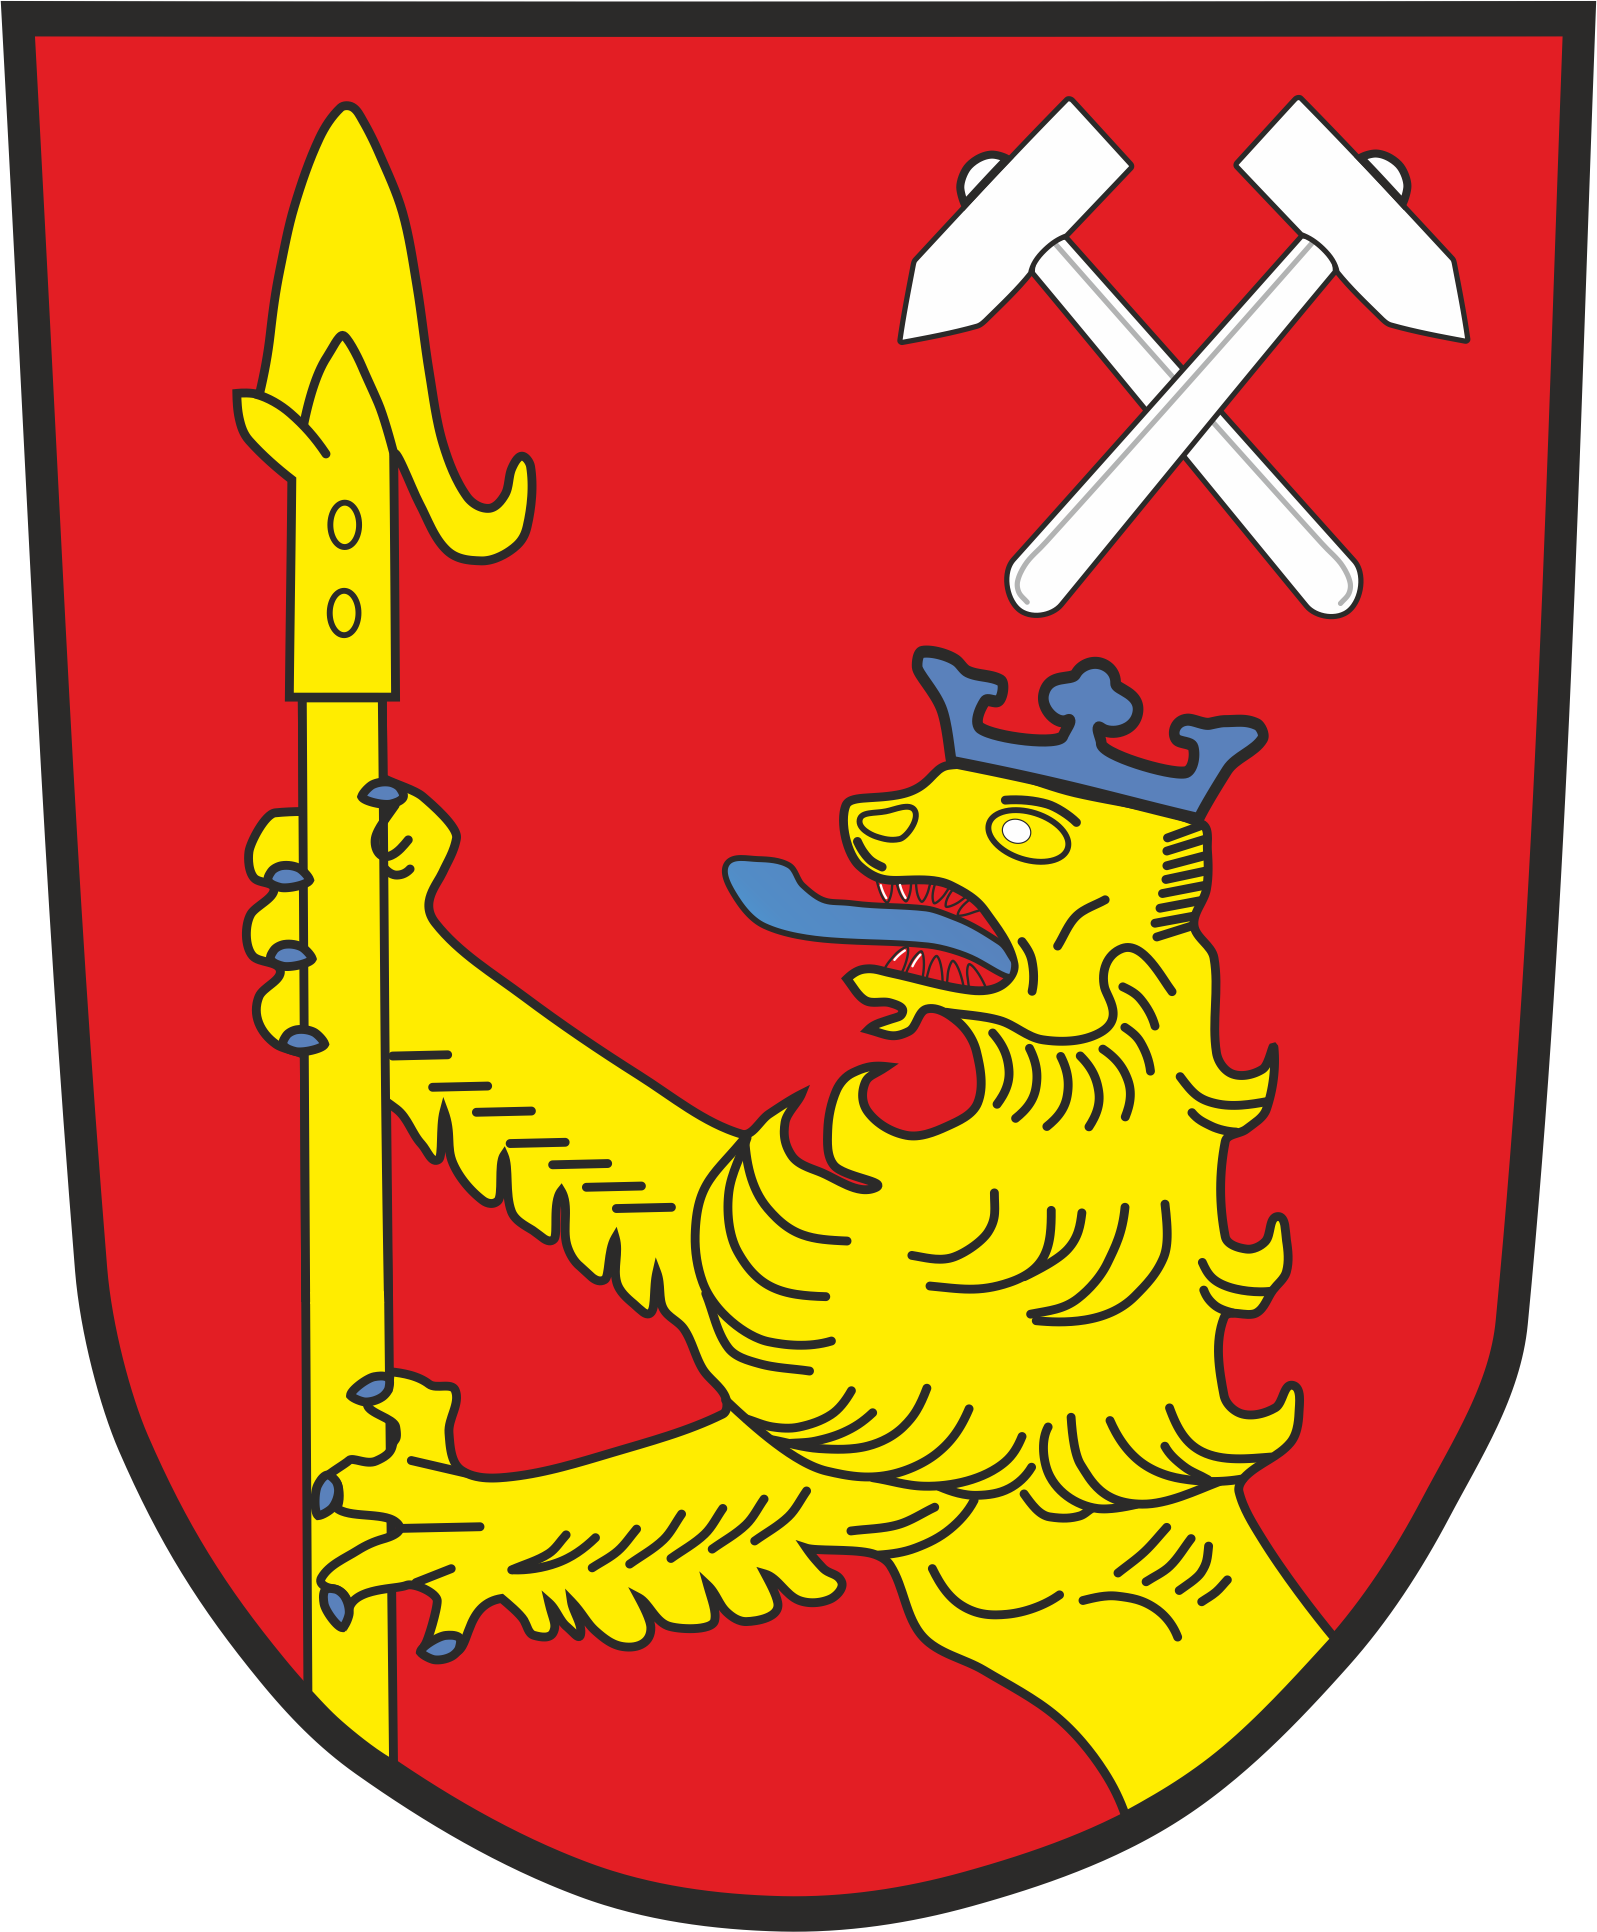 Wappen Westerngrund